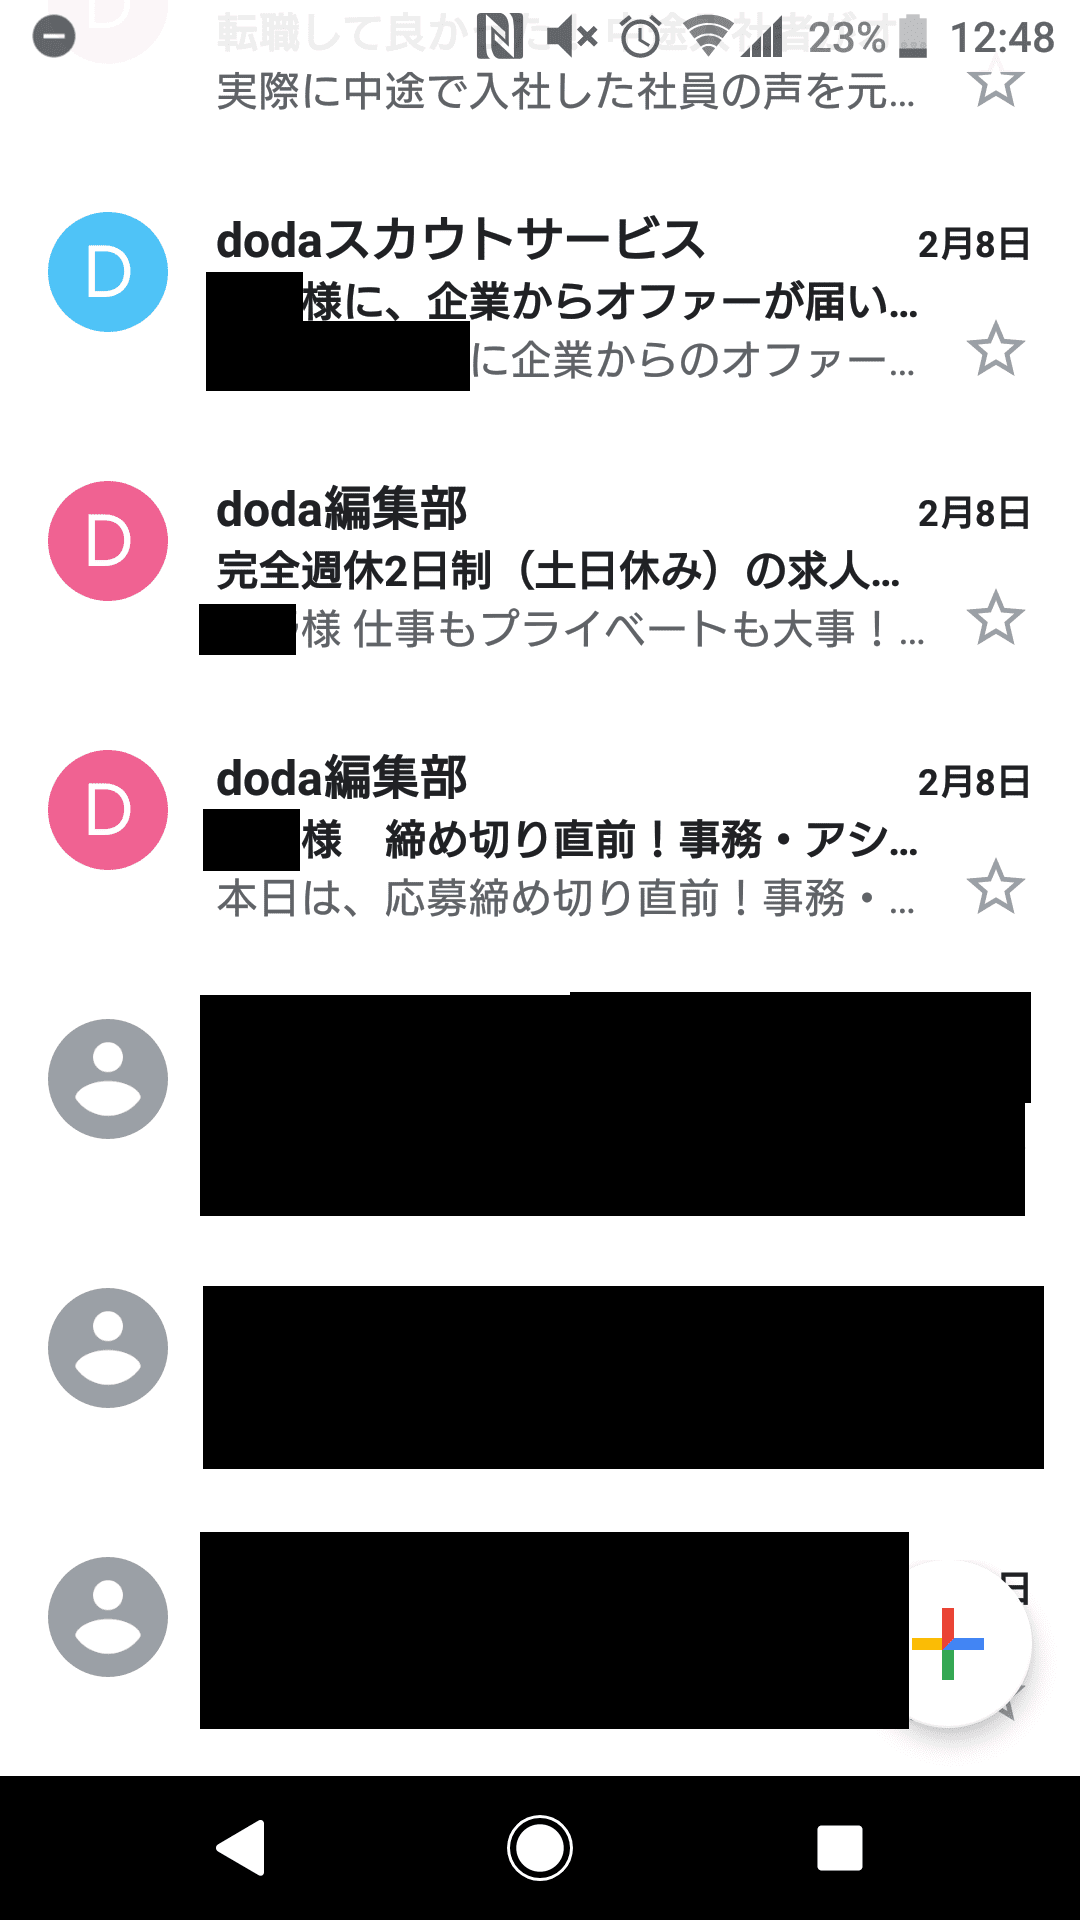 doda 東京